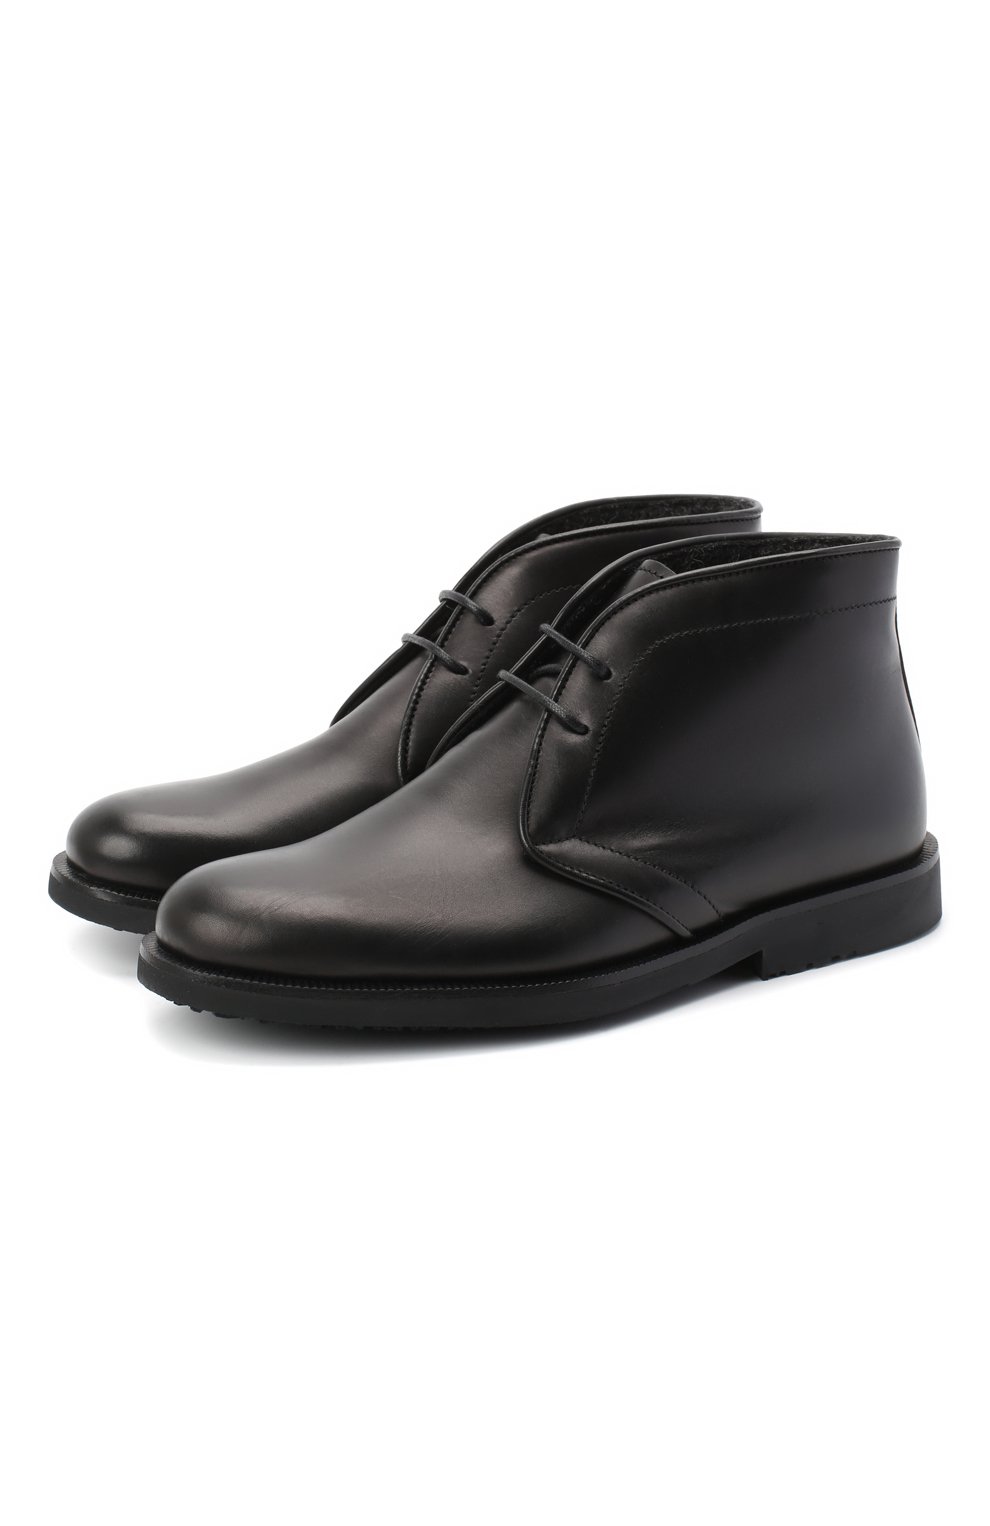 Кожаные ботинки Rondinella 11755C/662/31-33